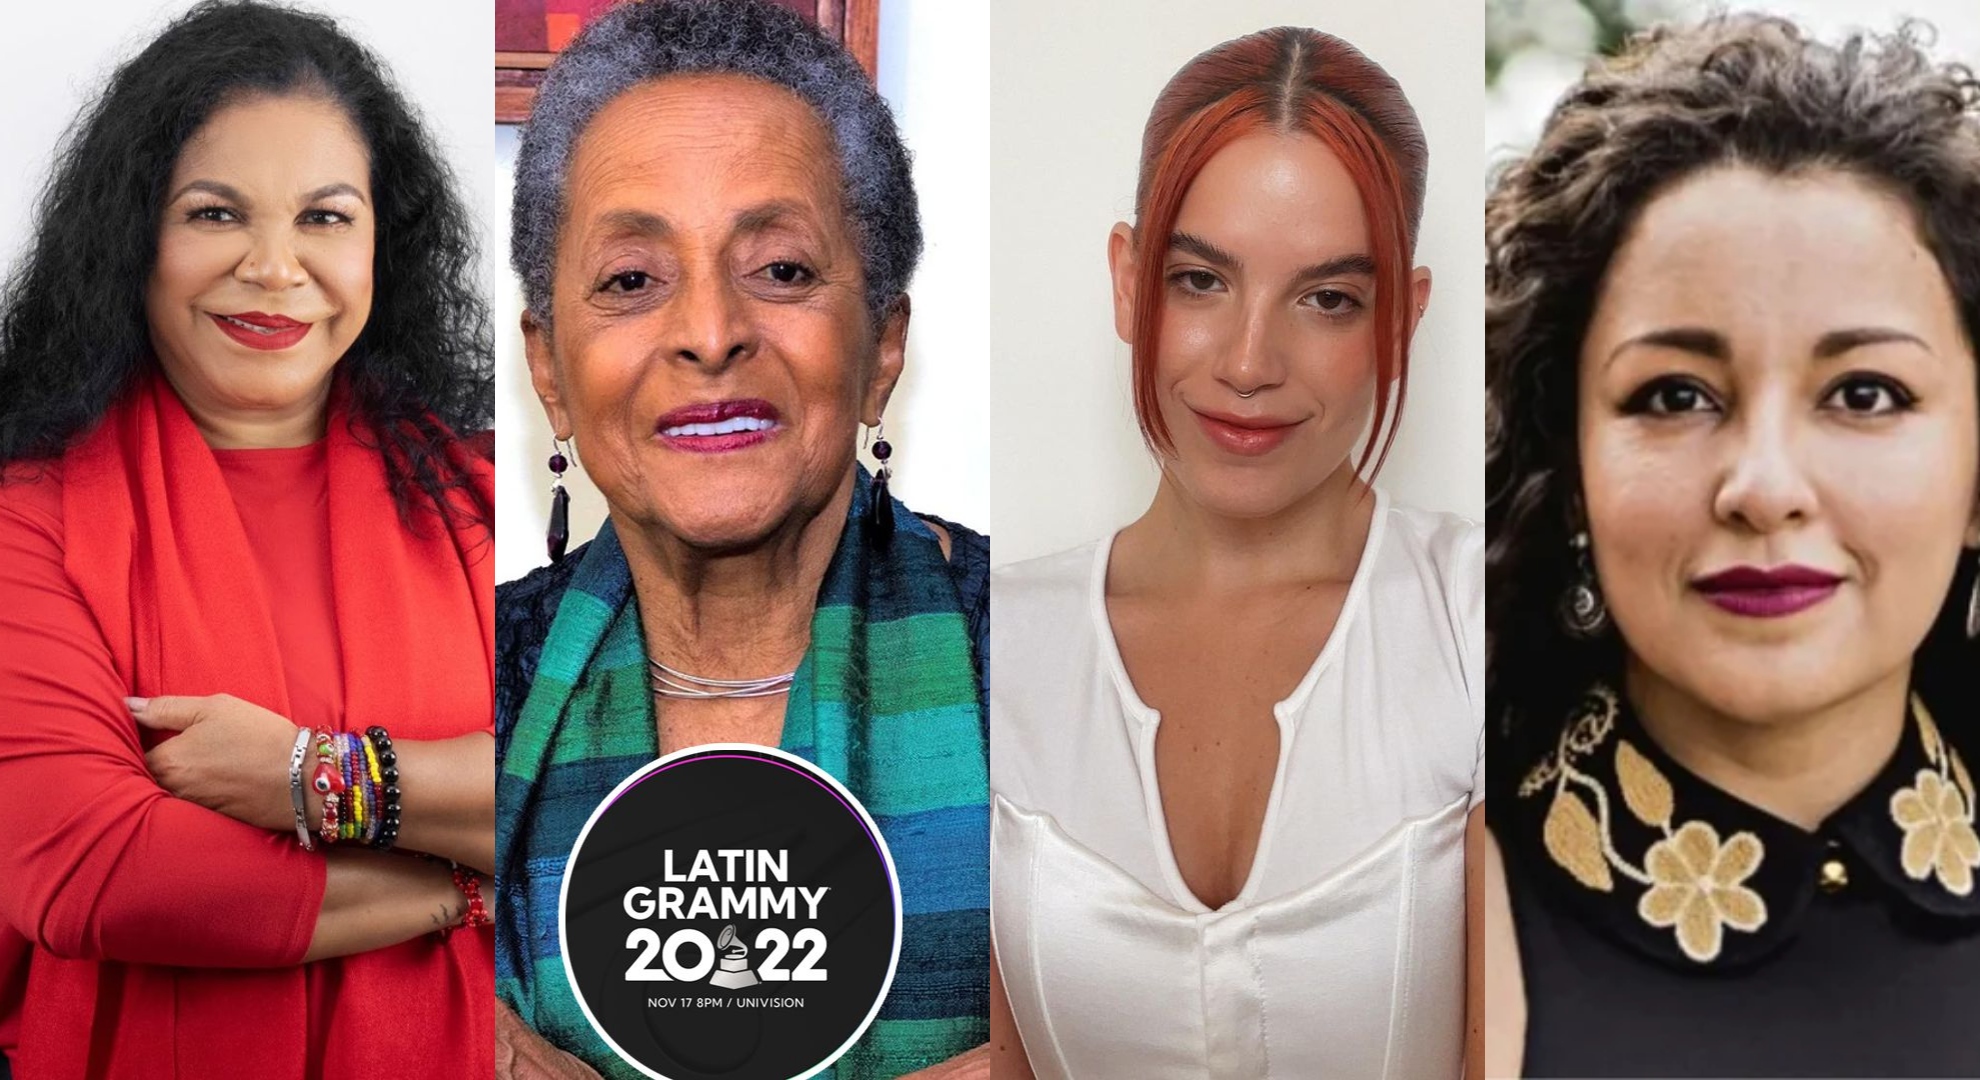 Eva Ayllón, Susana Baca, Nicole Zignago y Araceli Poma, las peruanas que lucharán hoy por un Latin Grammy